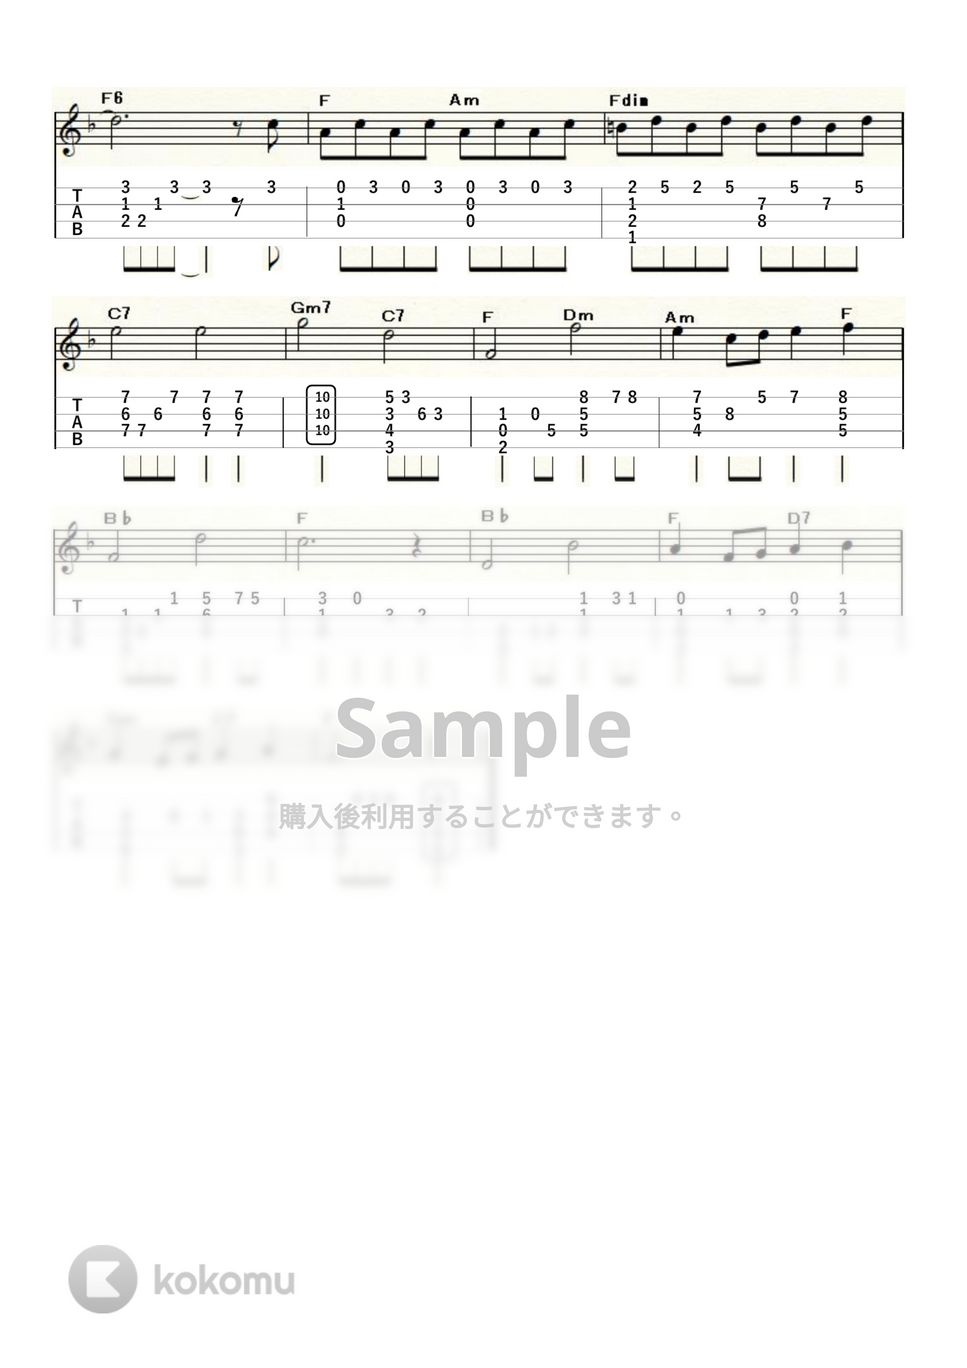 ジュディ・ガーランド - 虹の彼方に～OVER THE RAINBOW～ (ｳｸﾚﾚｿﾛ / High-G,Low-G / 中級) by ukulelepapa